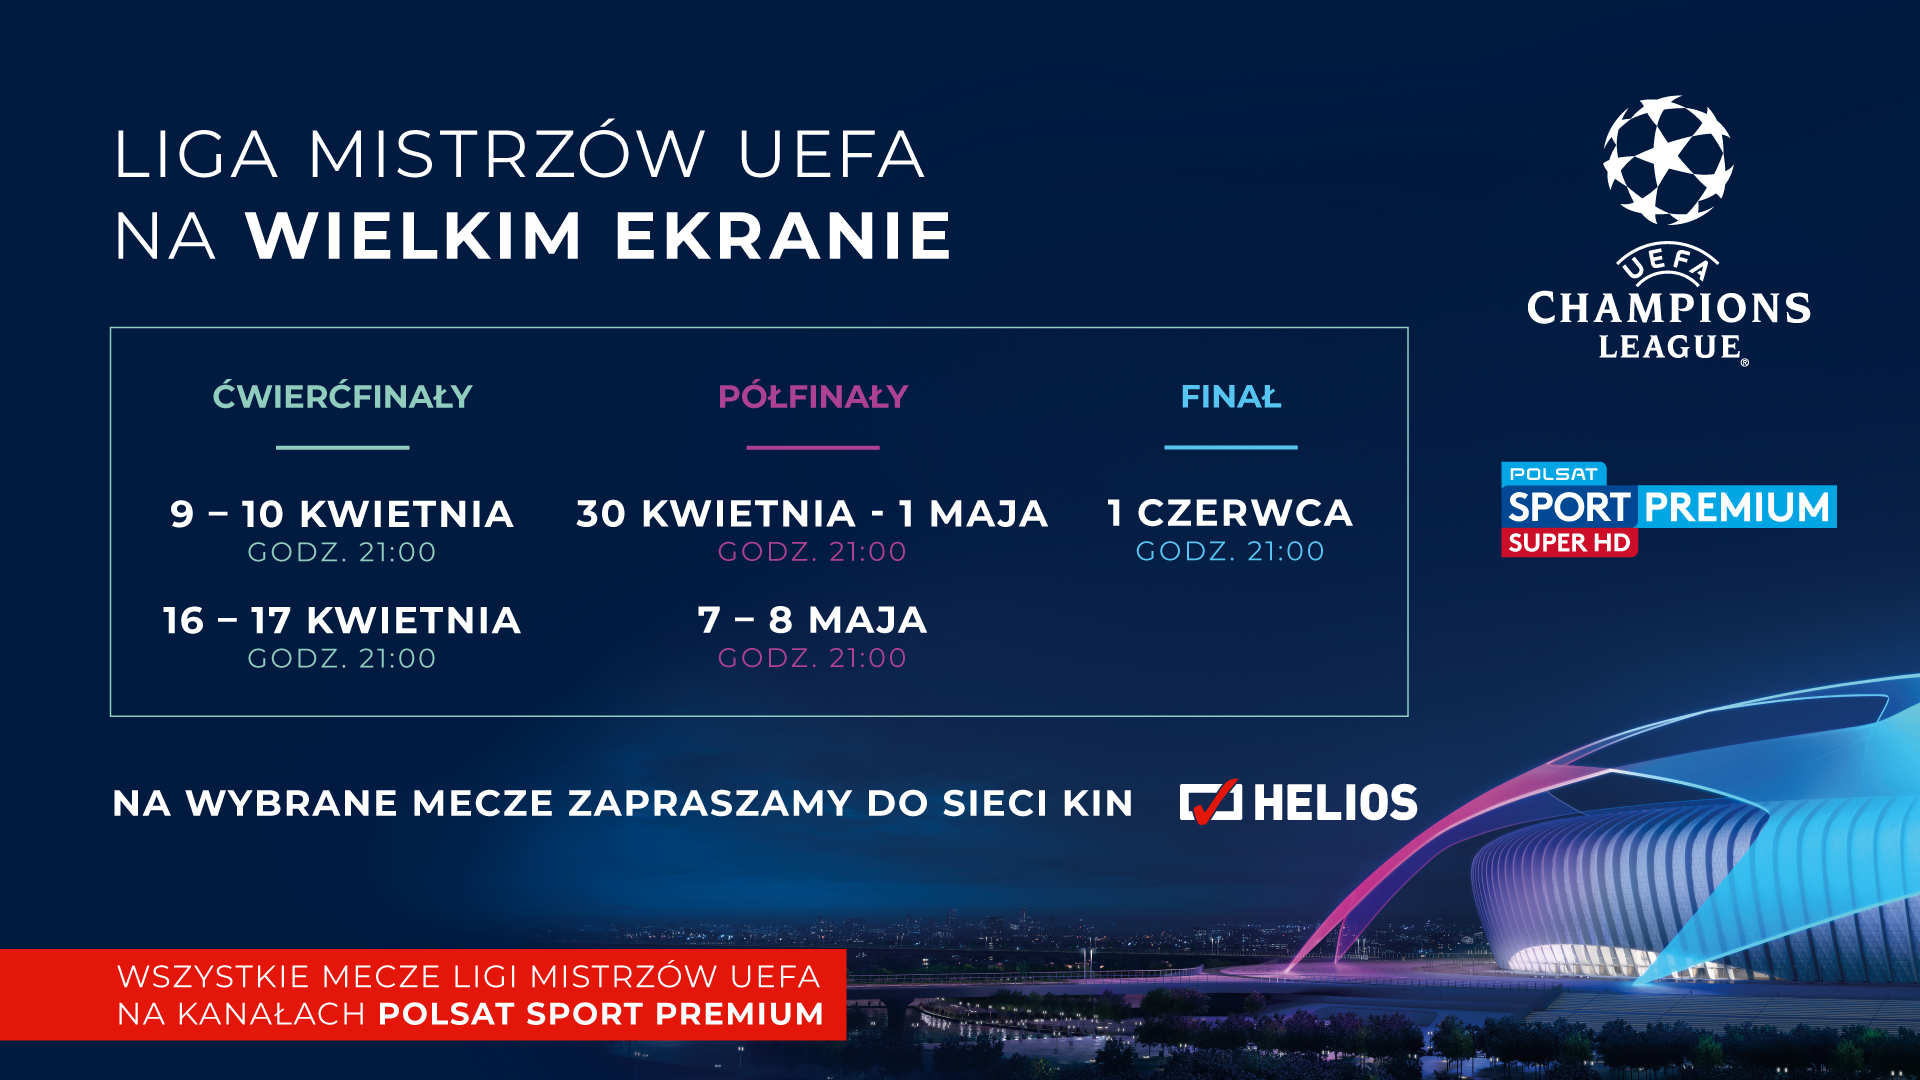 Liga mistrzów UEFA na wielkim ekranie